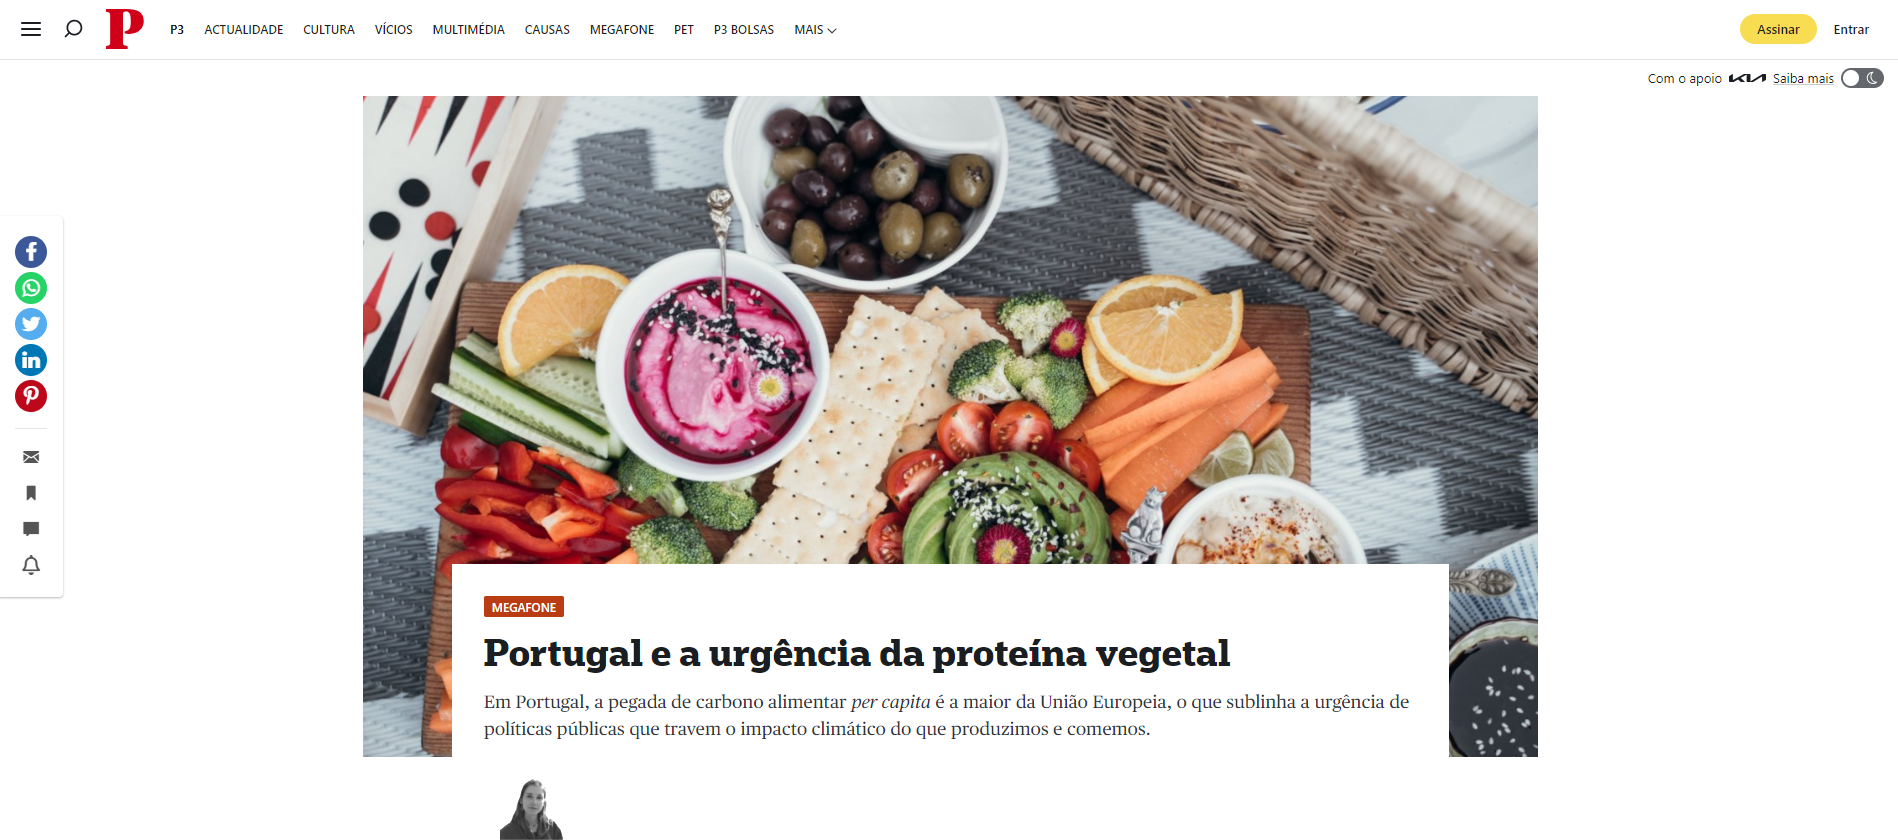 Portugal e a urgência da proteína vegetal